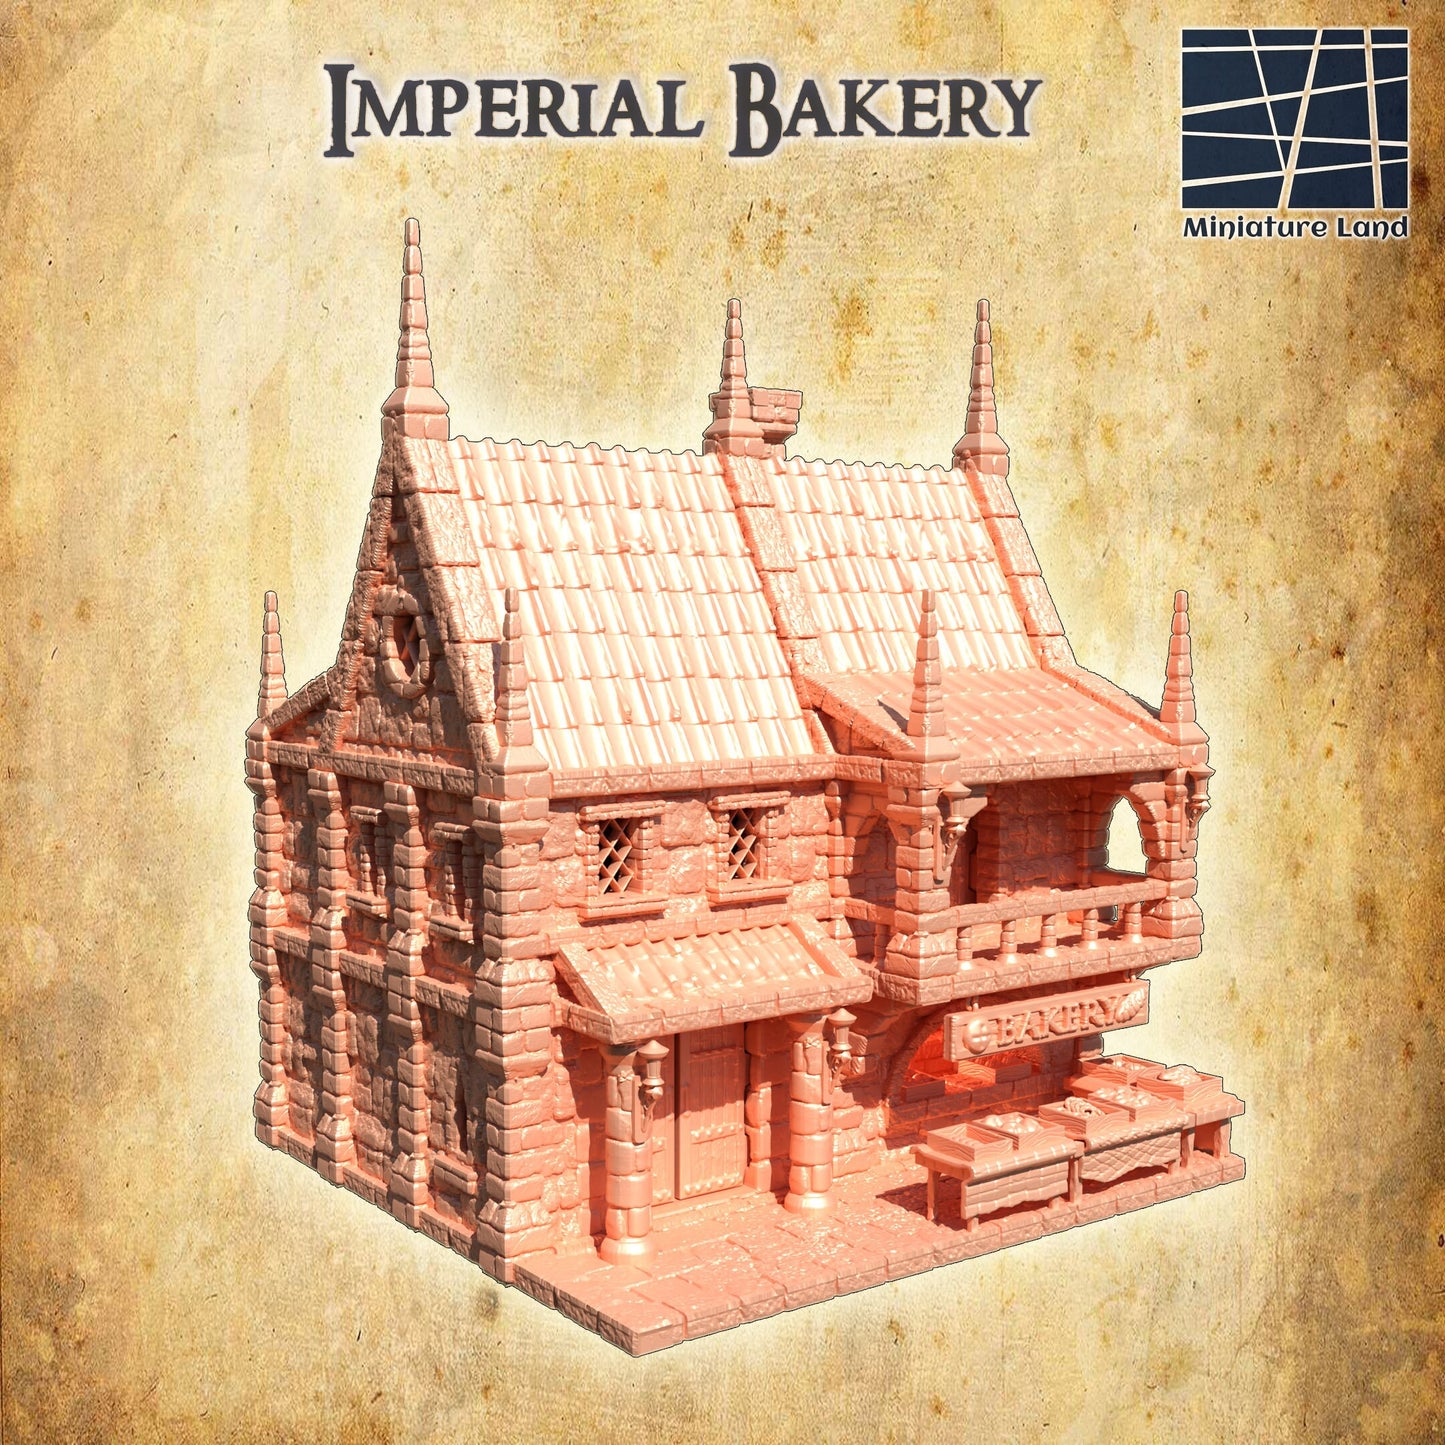 Imperial Bakery, Baker's House, Bakery